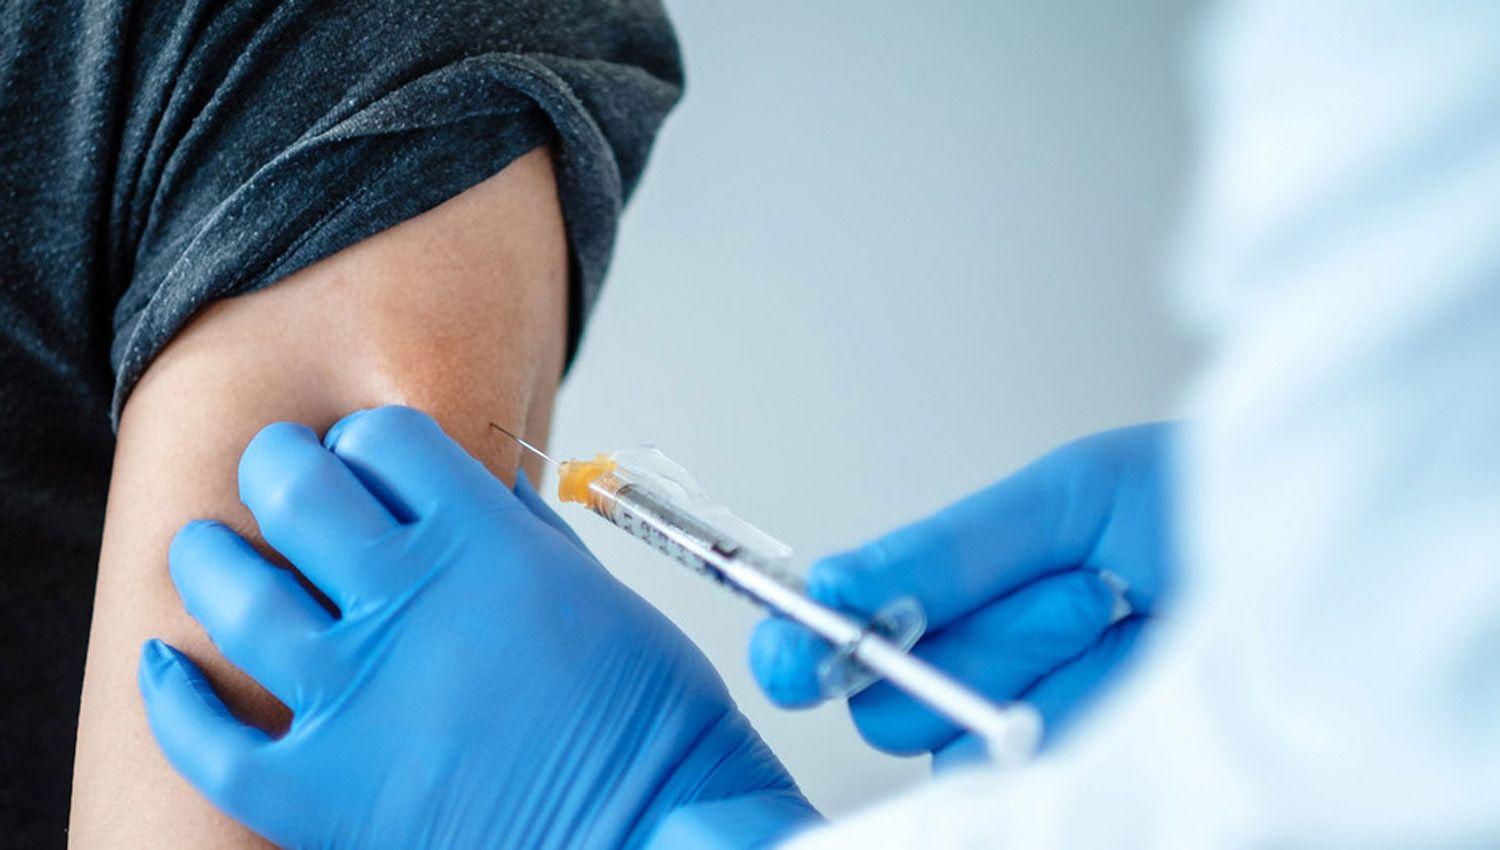 La Unioacuten Europea ldquodispuesta a discutirrdquo la liberacioacuten de las patentes de las vacunas contra el coronavirus